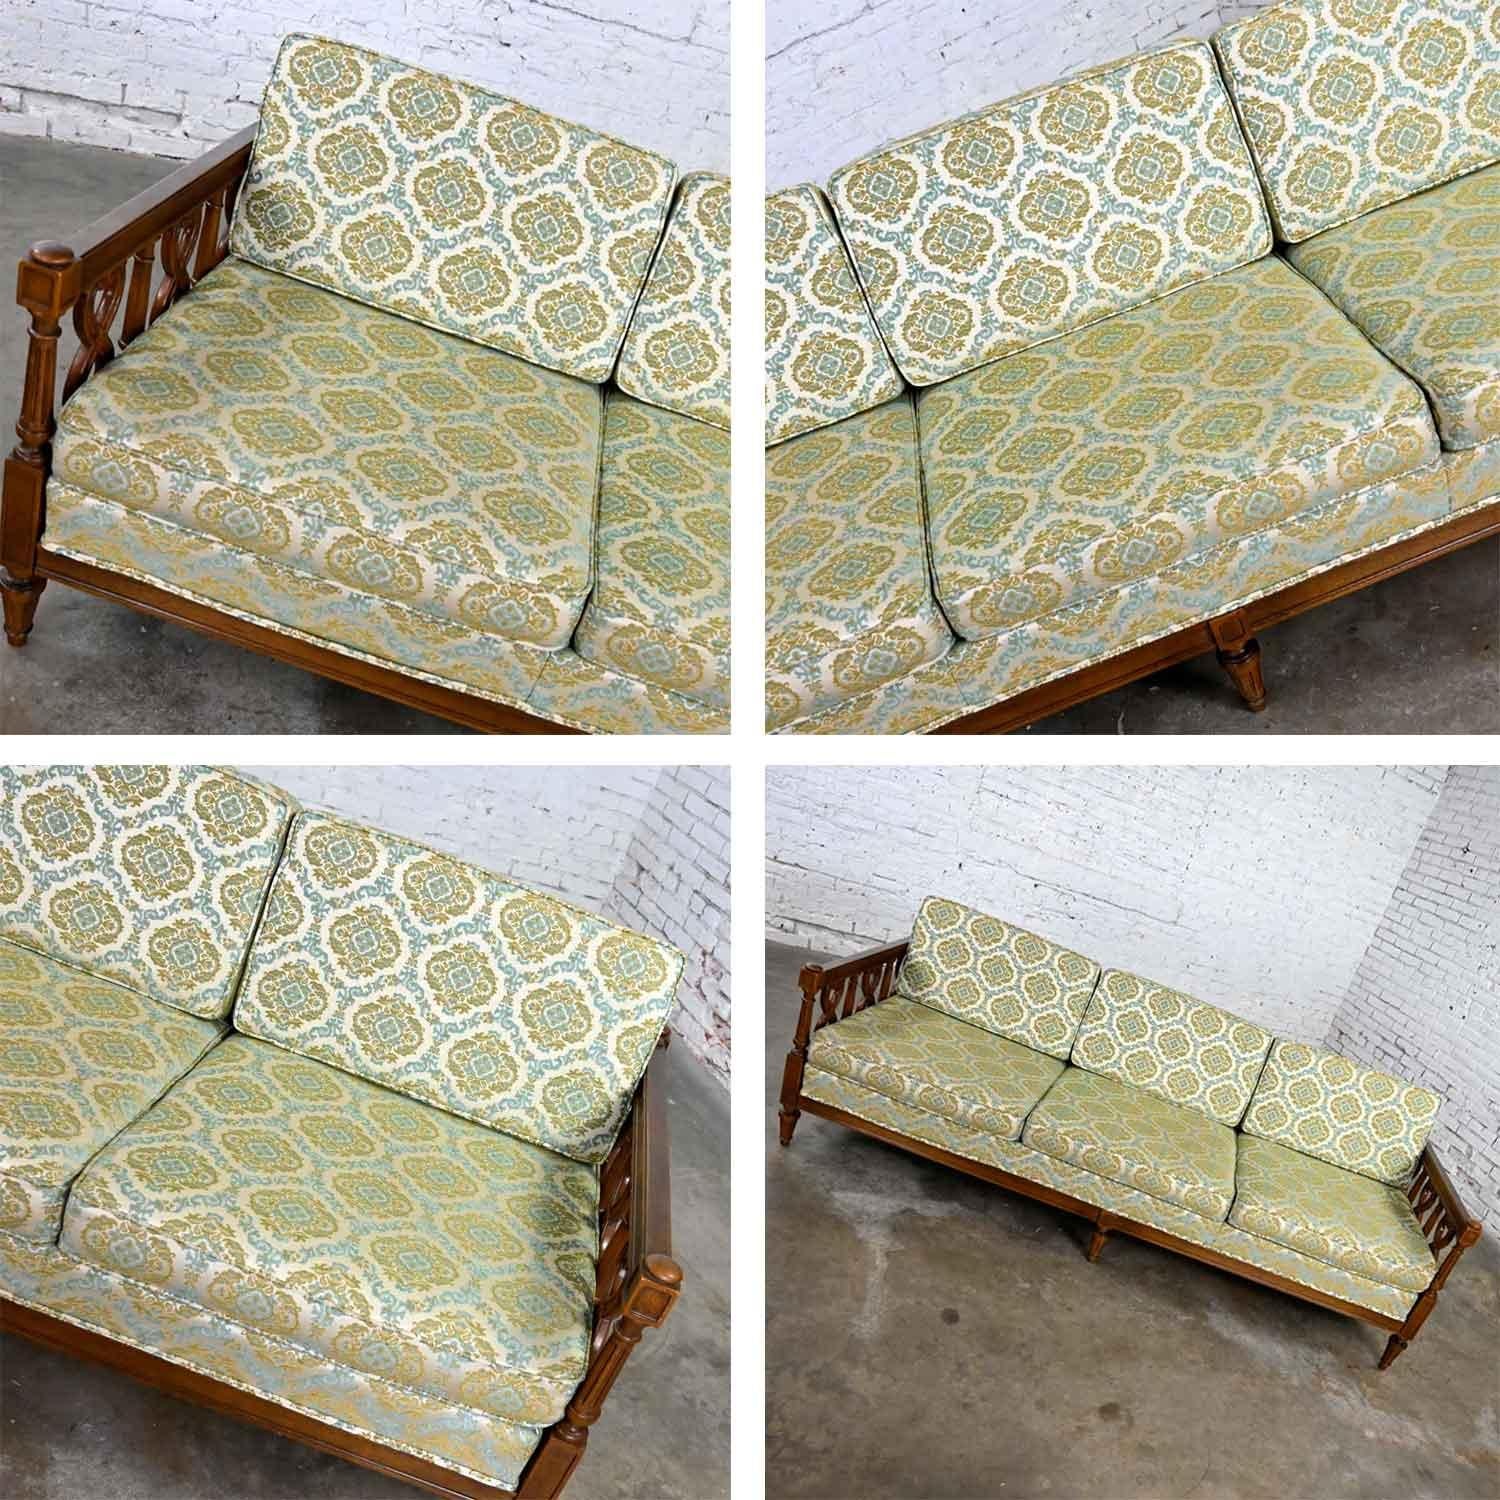 Vintage Mediterranean Spanish Revival Style Sofa Wood Details by American Furn 5